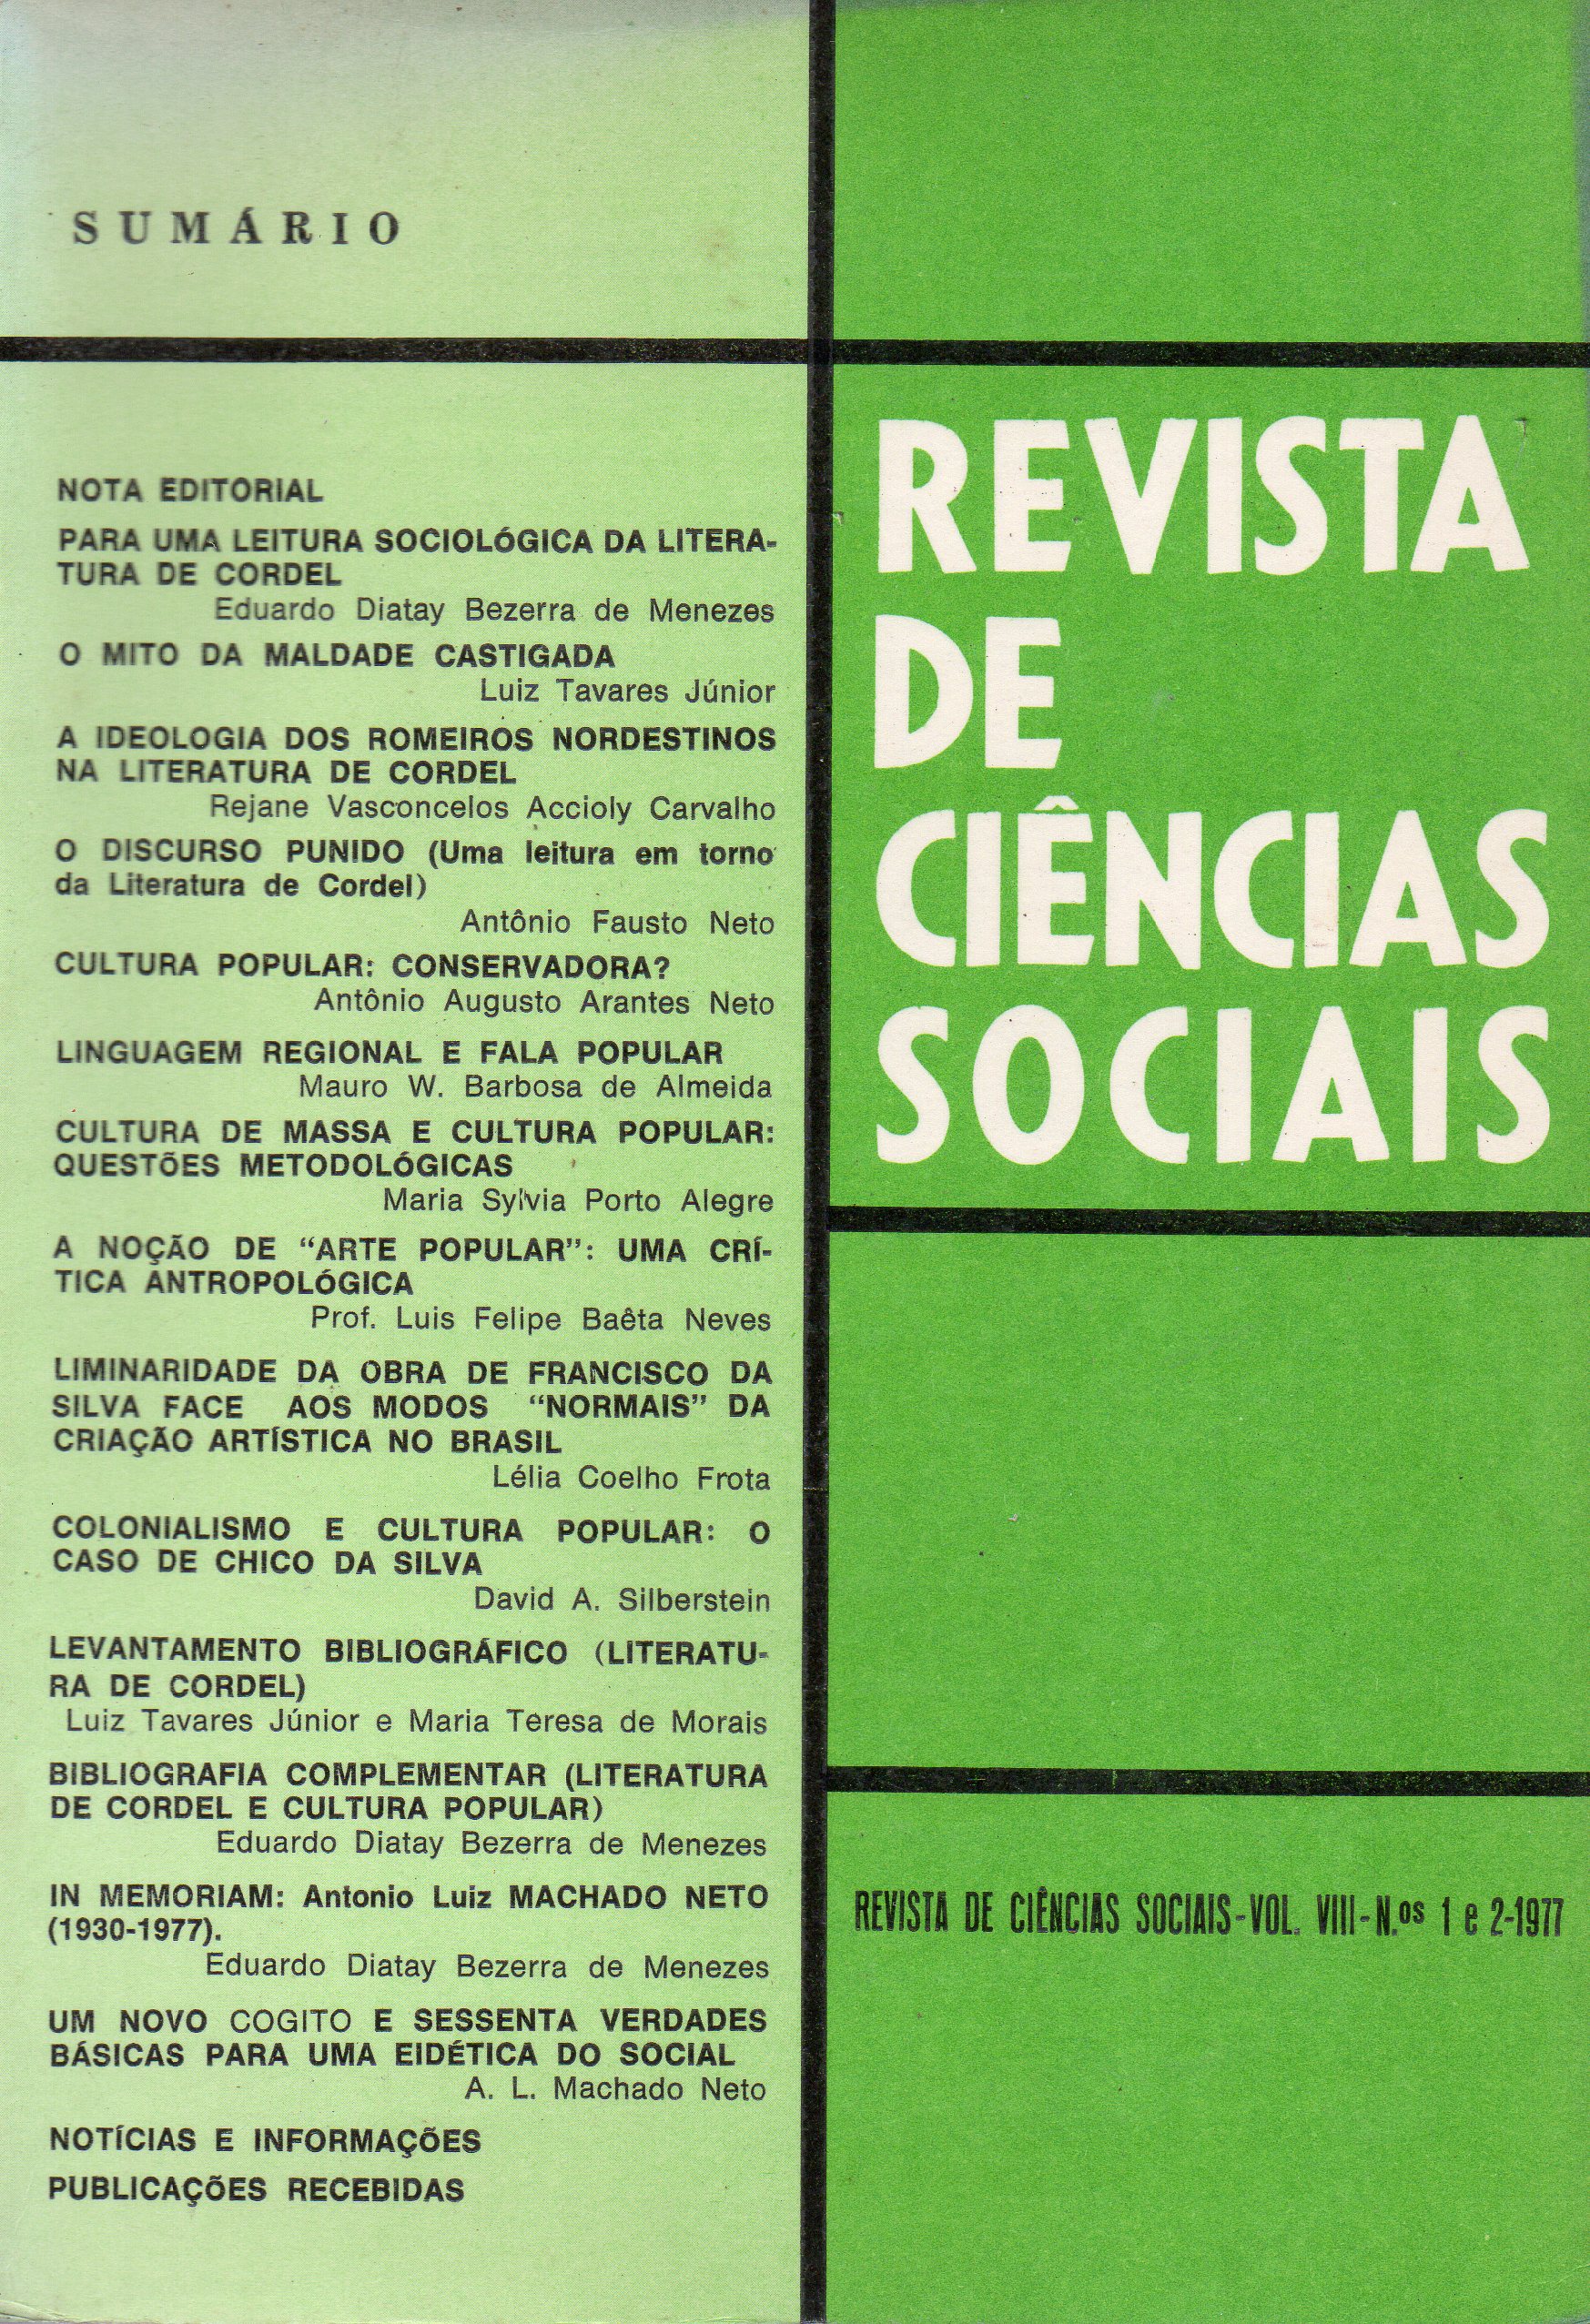 					Ver Vol. 8 Núm. 1 e 2 (1977): Revista de Ciências Sociais
				